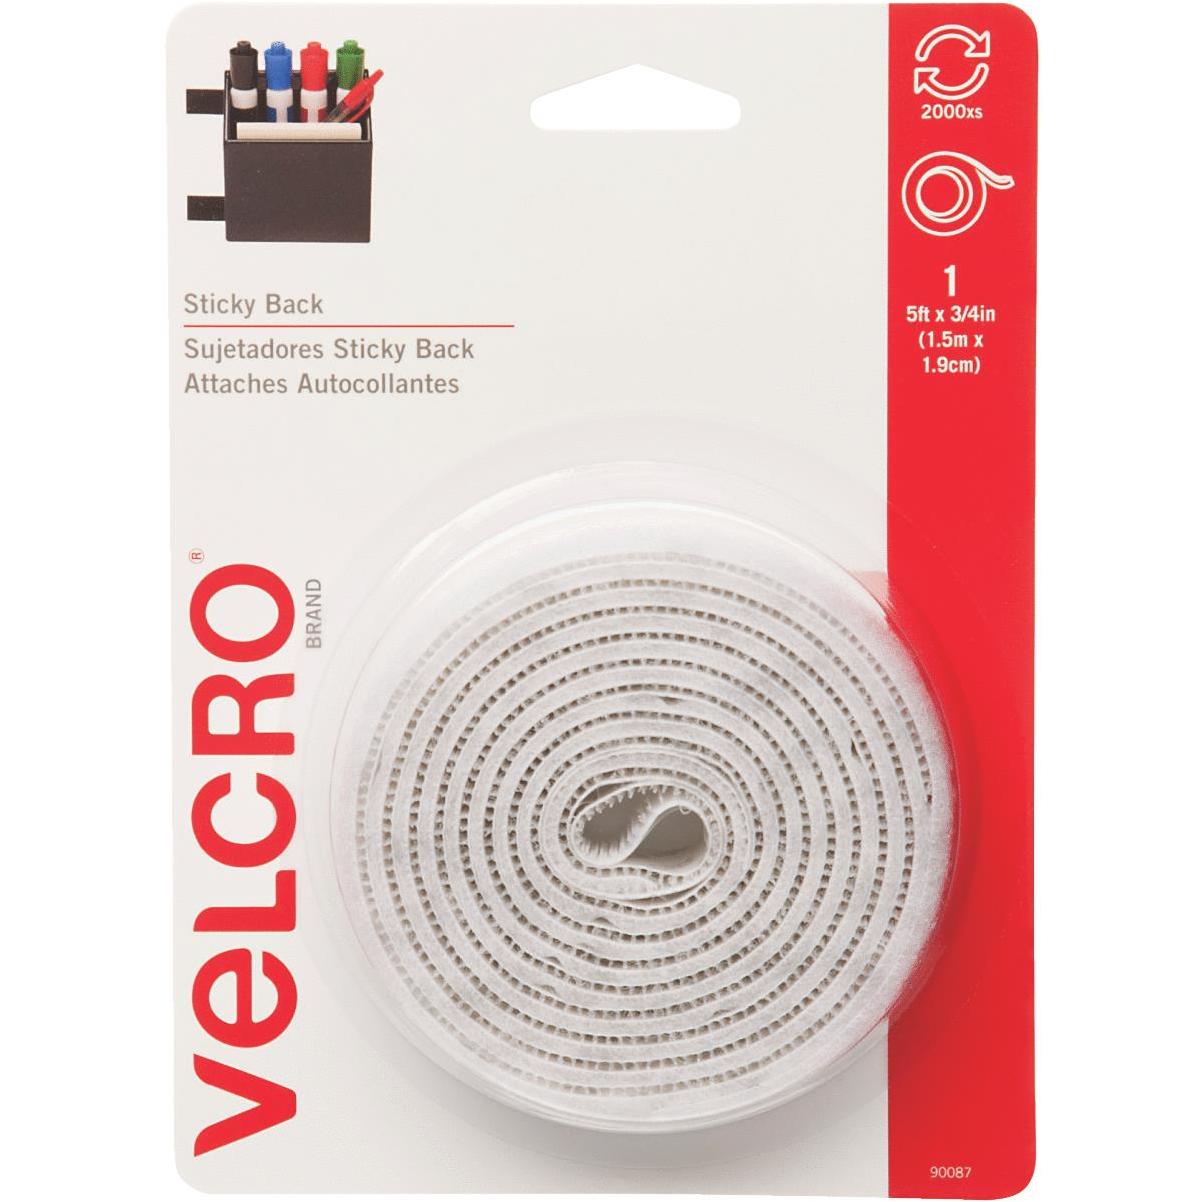 White Sticky Back Square VELCRO® Brand Fasteners - Sticky Back